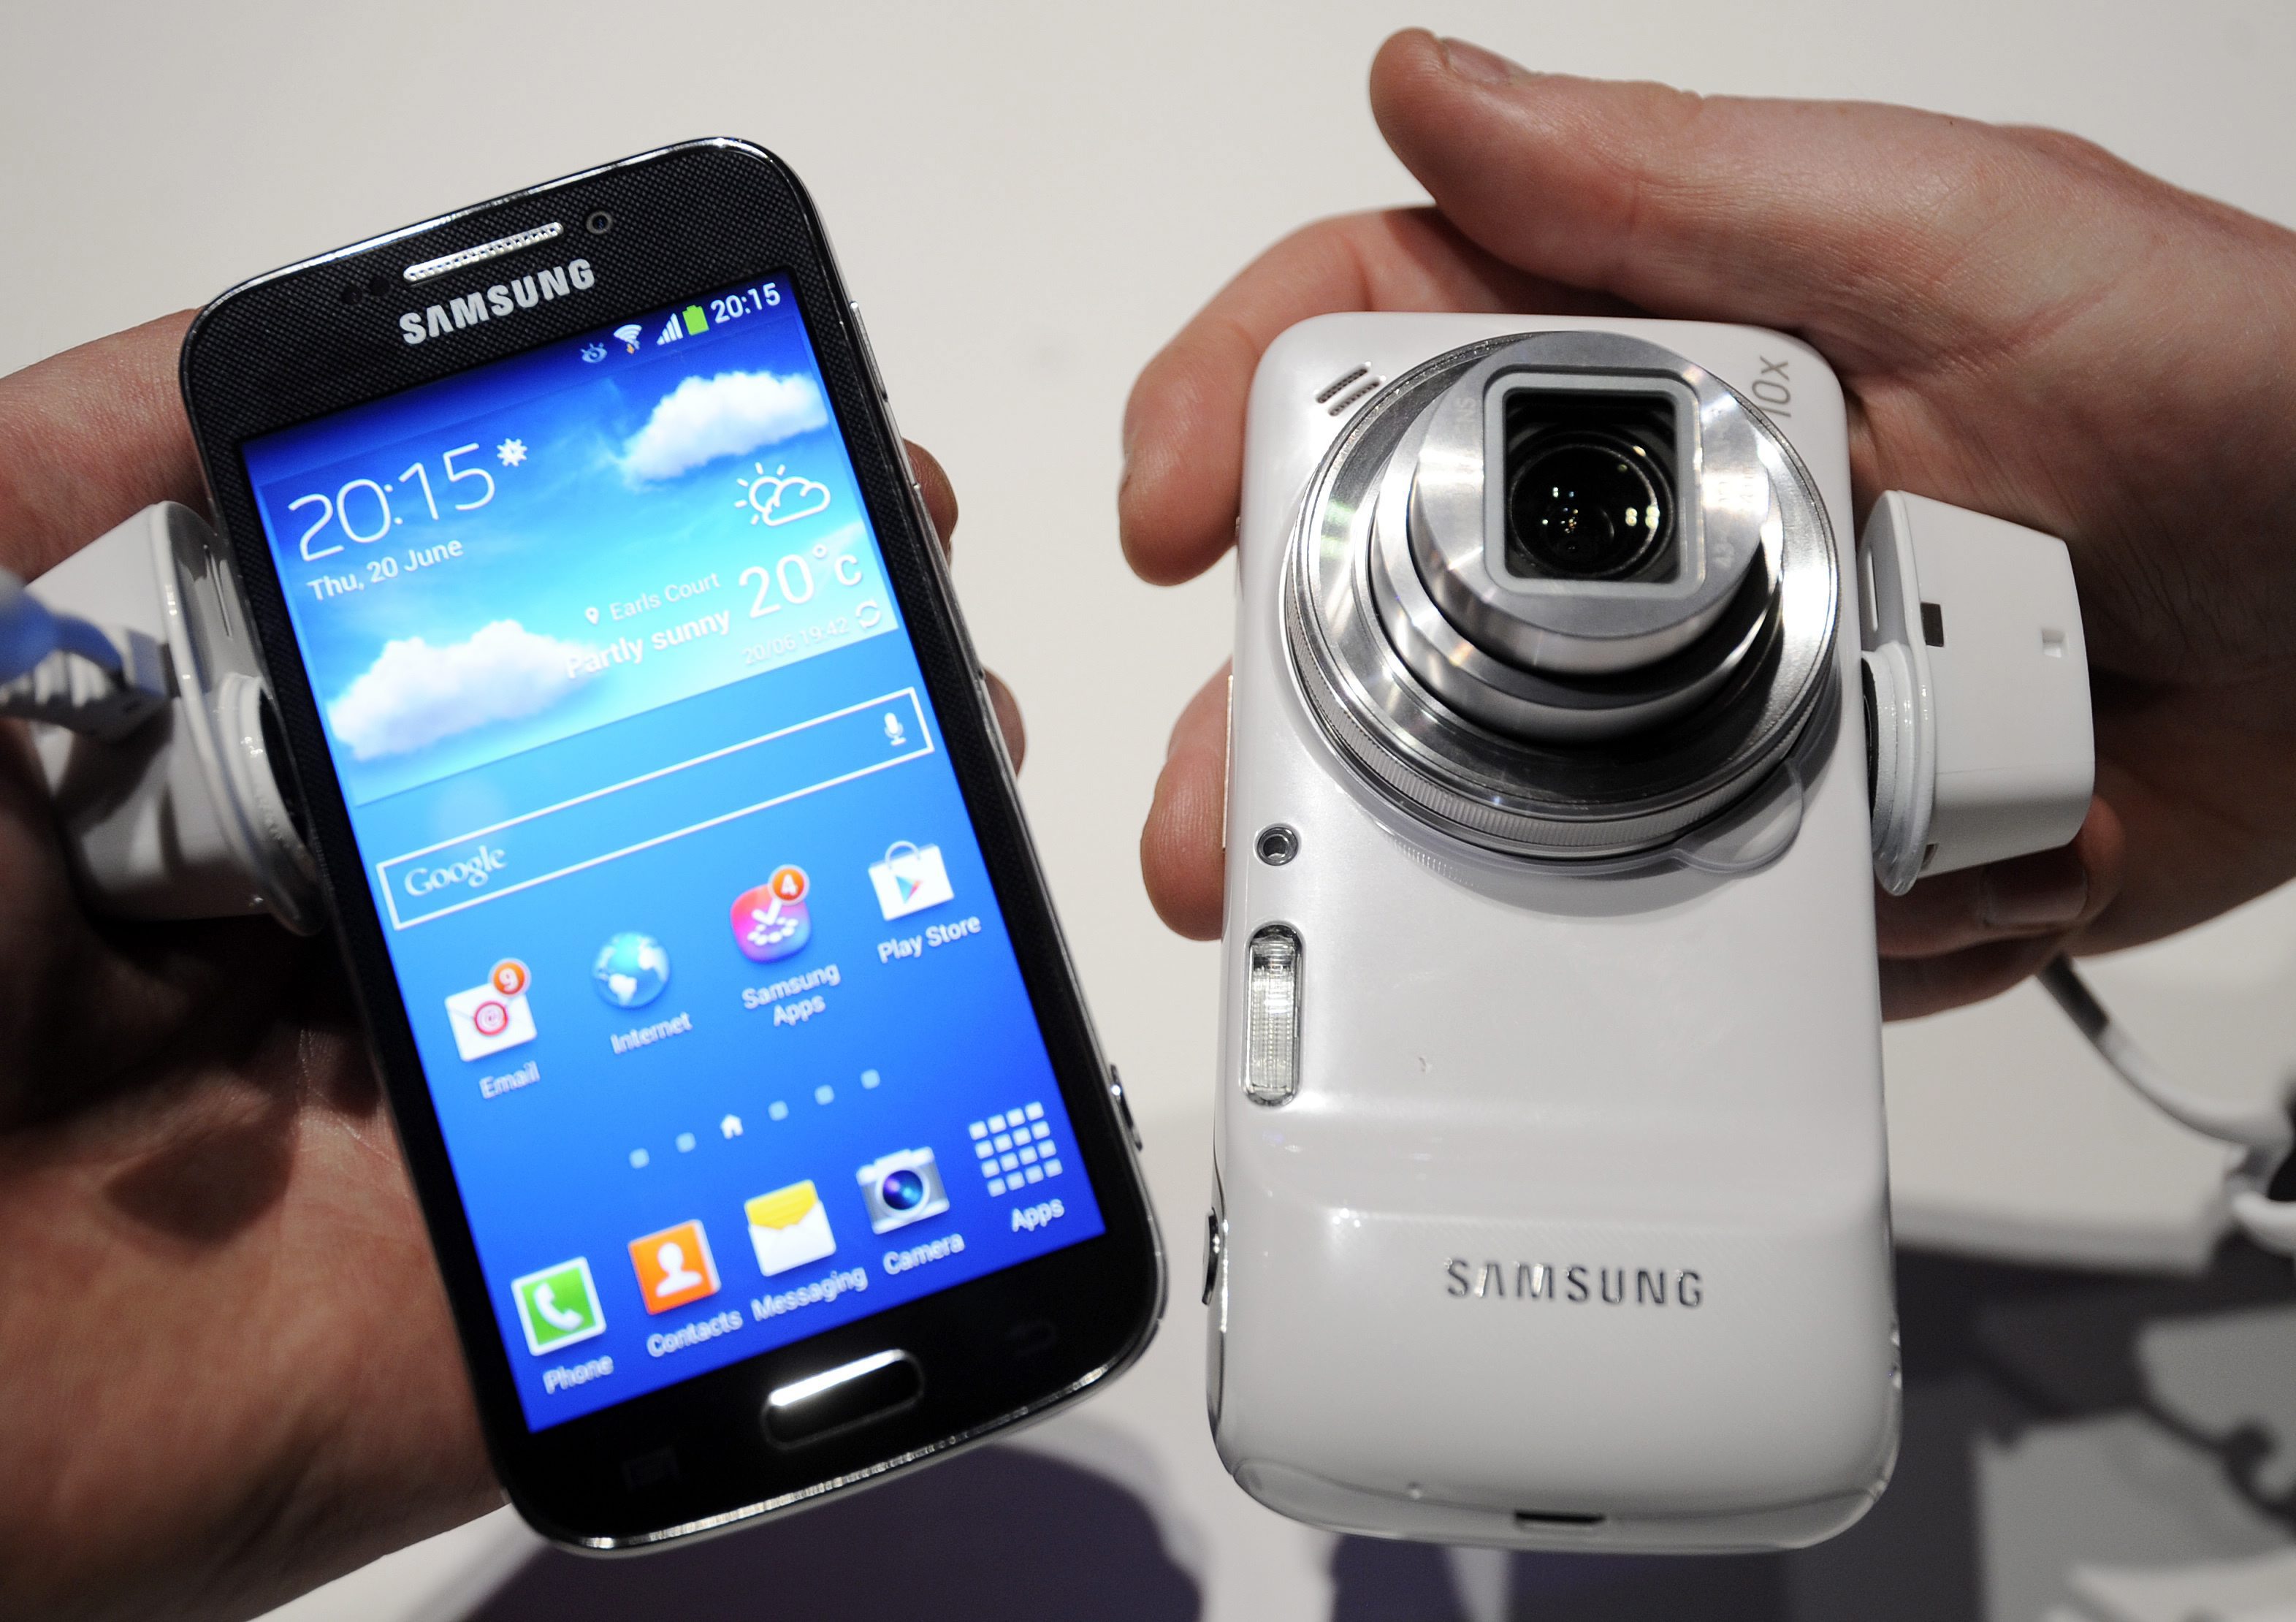 Сливането показва интереса на корейския производител към хибридни устройства като Galaxy S4 Zoom